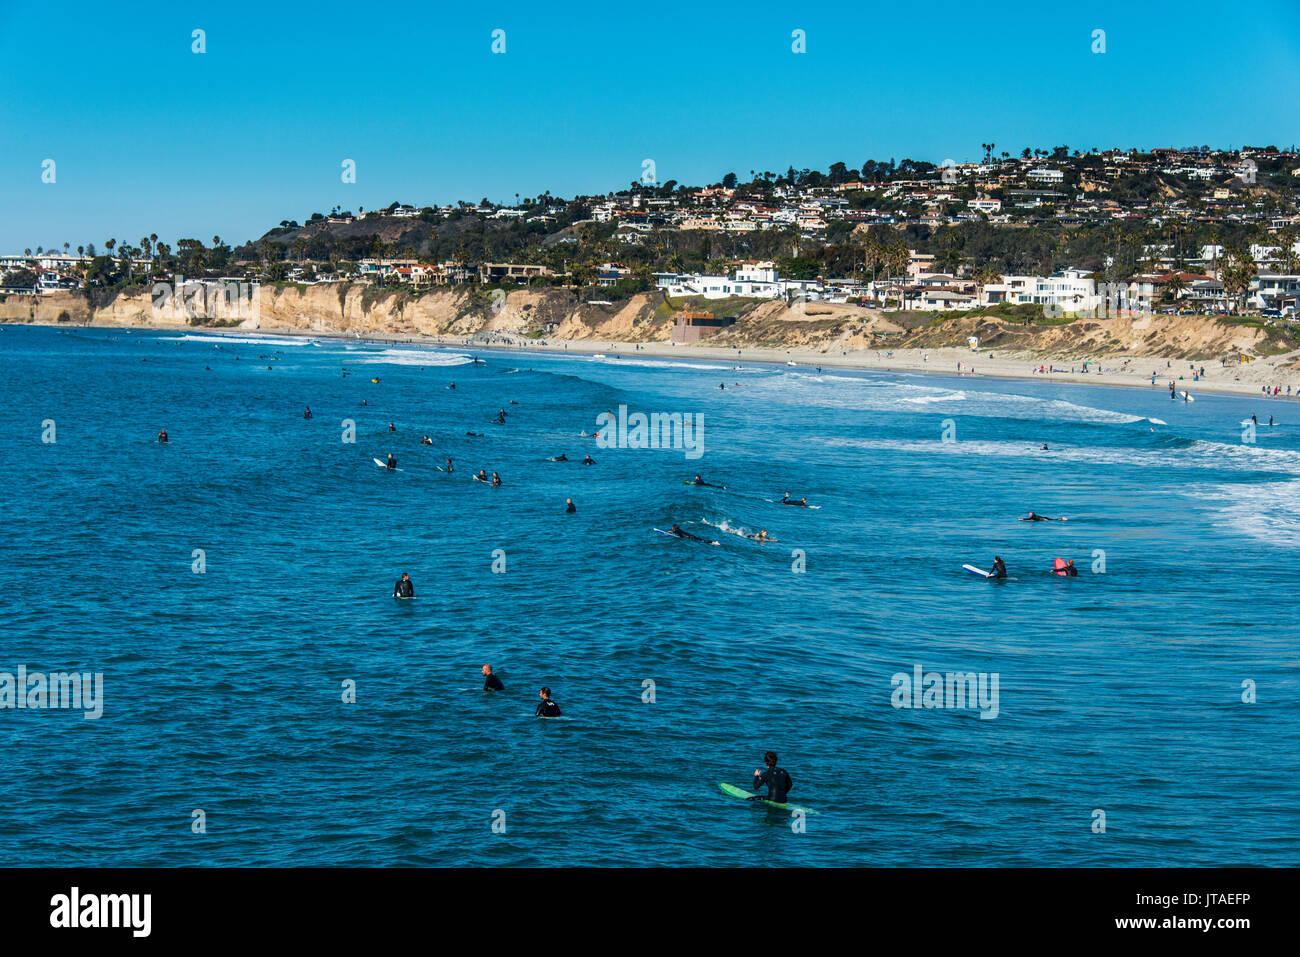 Surfers in attesa nelle acque di La Jolla per la prossima grande onda, California, Stati Uniti d'America, America del Nord Foto Stock